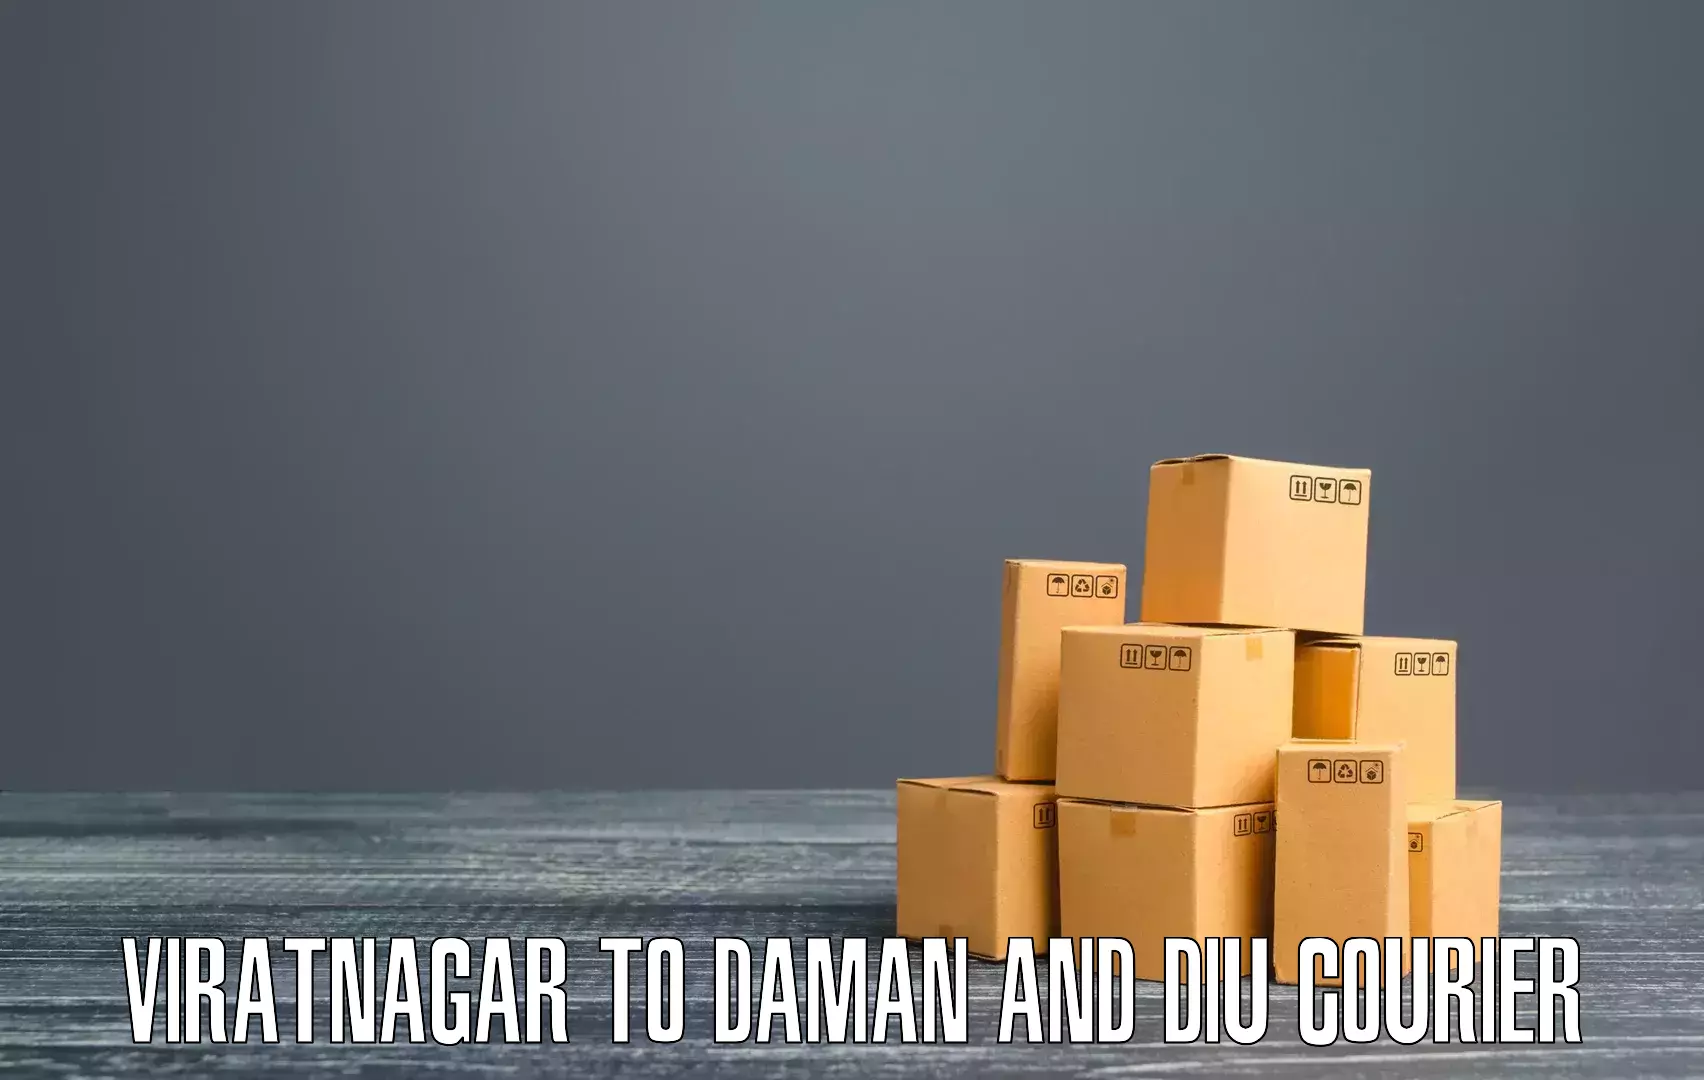 Door-to-door freight service Viratnagar to Daman and Diu